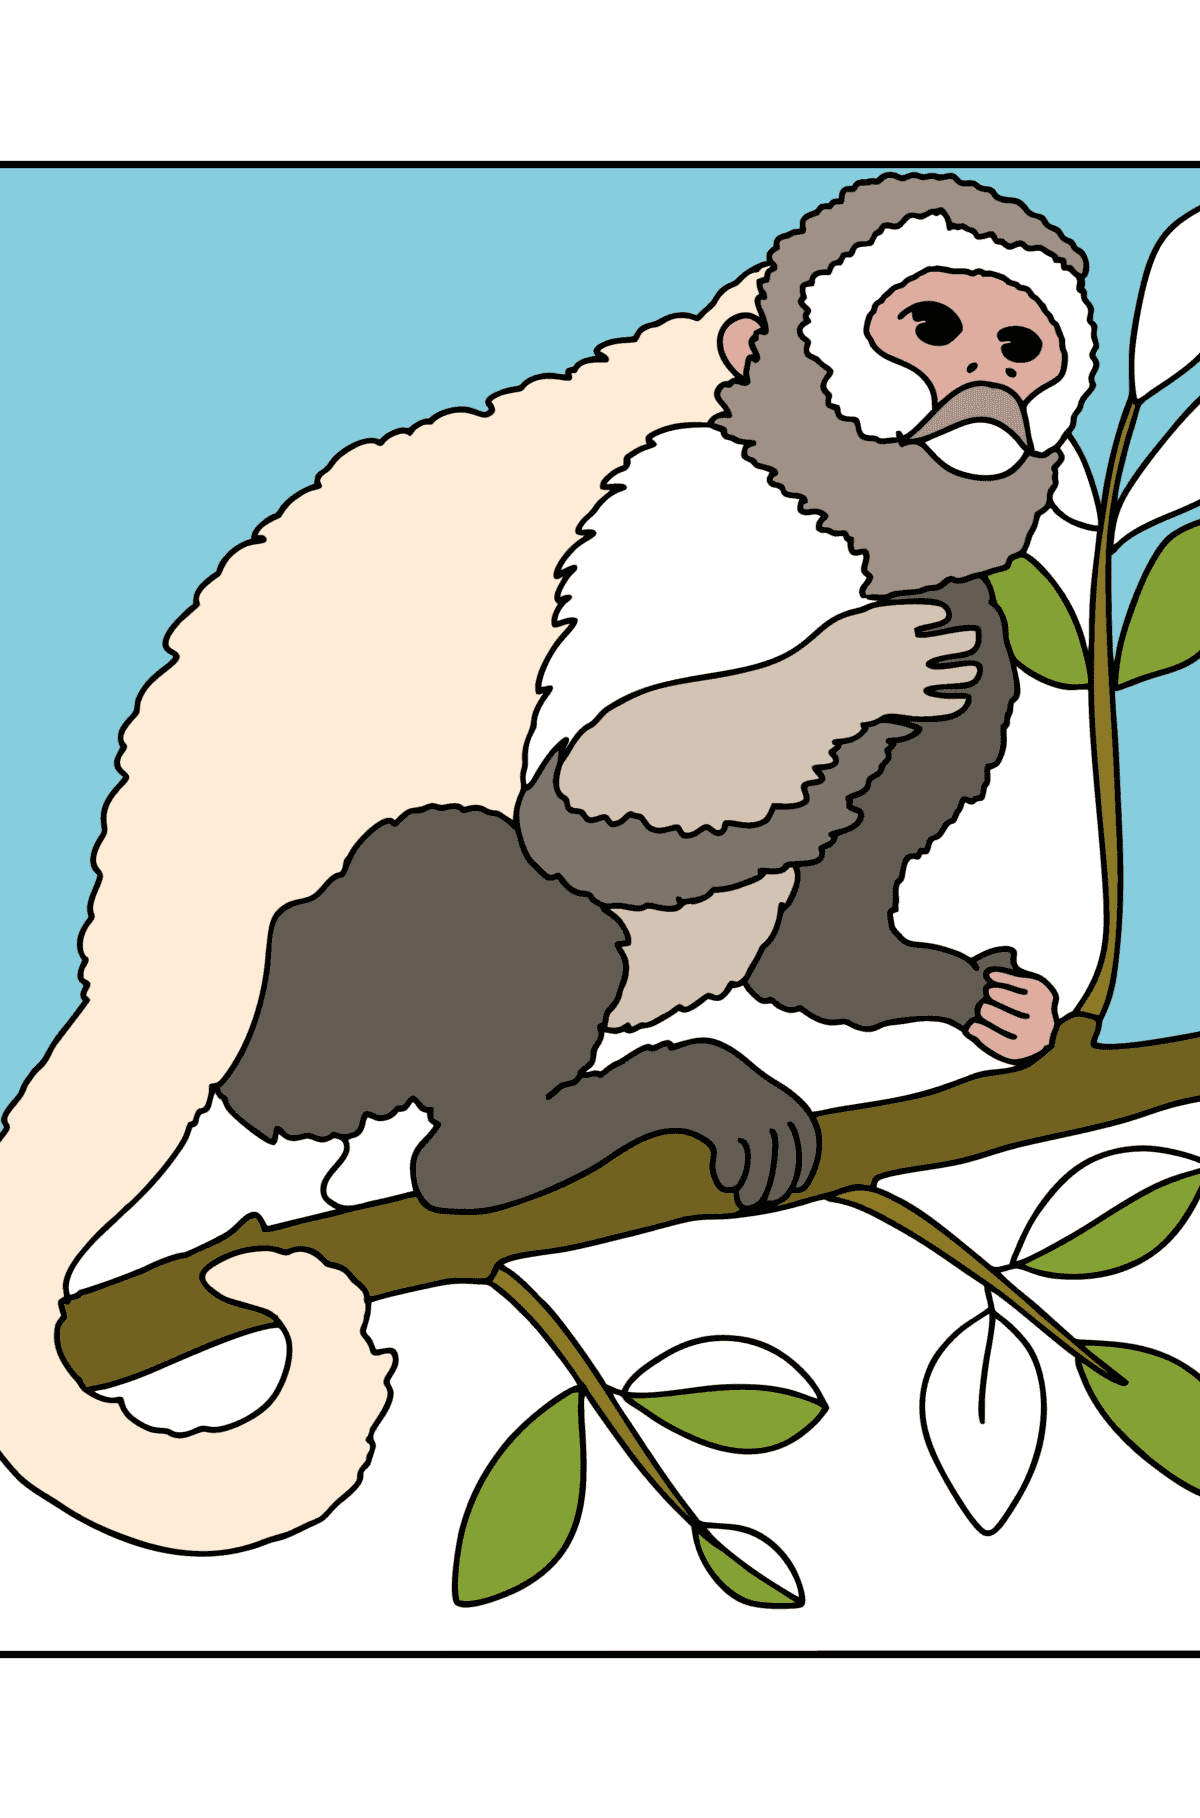 Affe auf einem Baum ausmalbild - Malvorlagen für Kinder